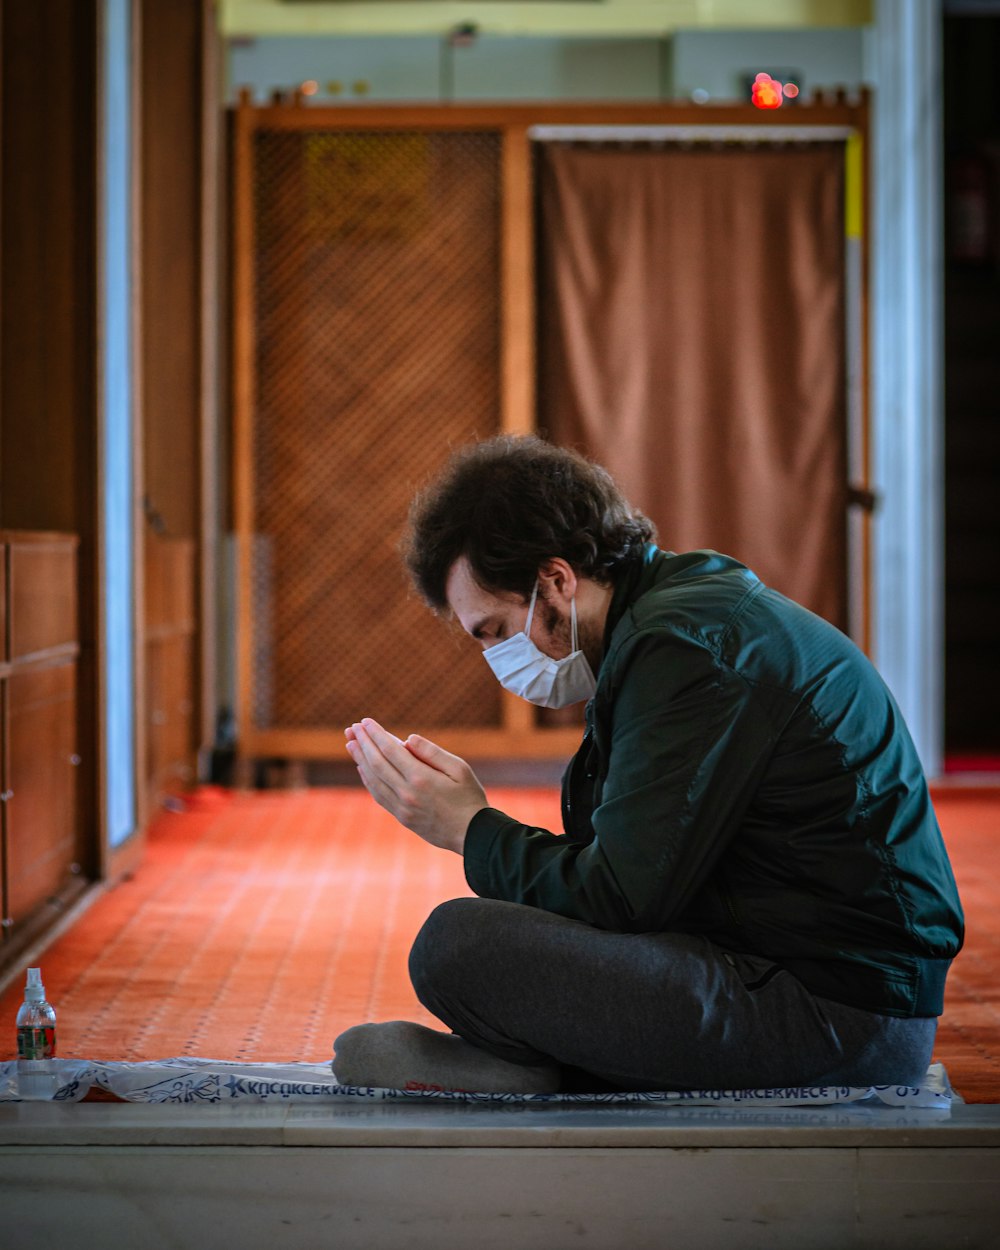 Un uomo seduto sul pavimento che indossa una maschera facciale